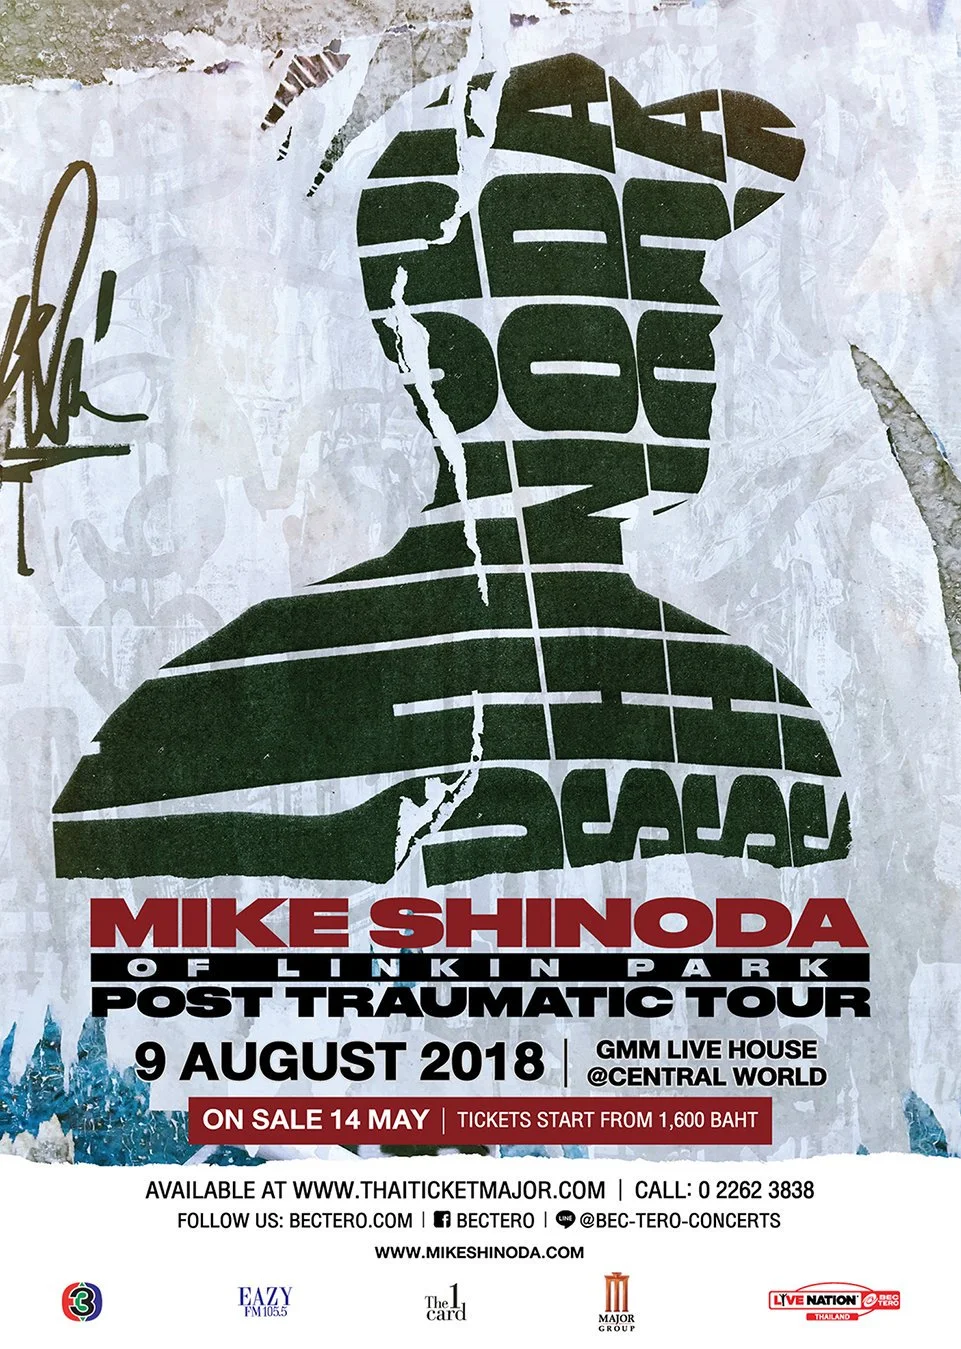 Майк Шинода дал первый сольный концерт с треками Linkin Park, Fort Minor и новыми песнями - фото 1